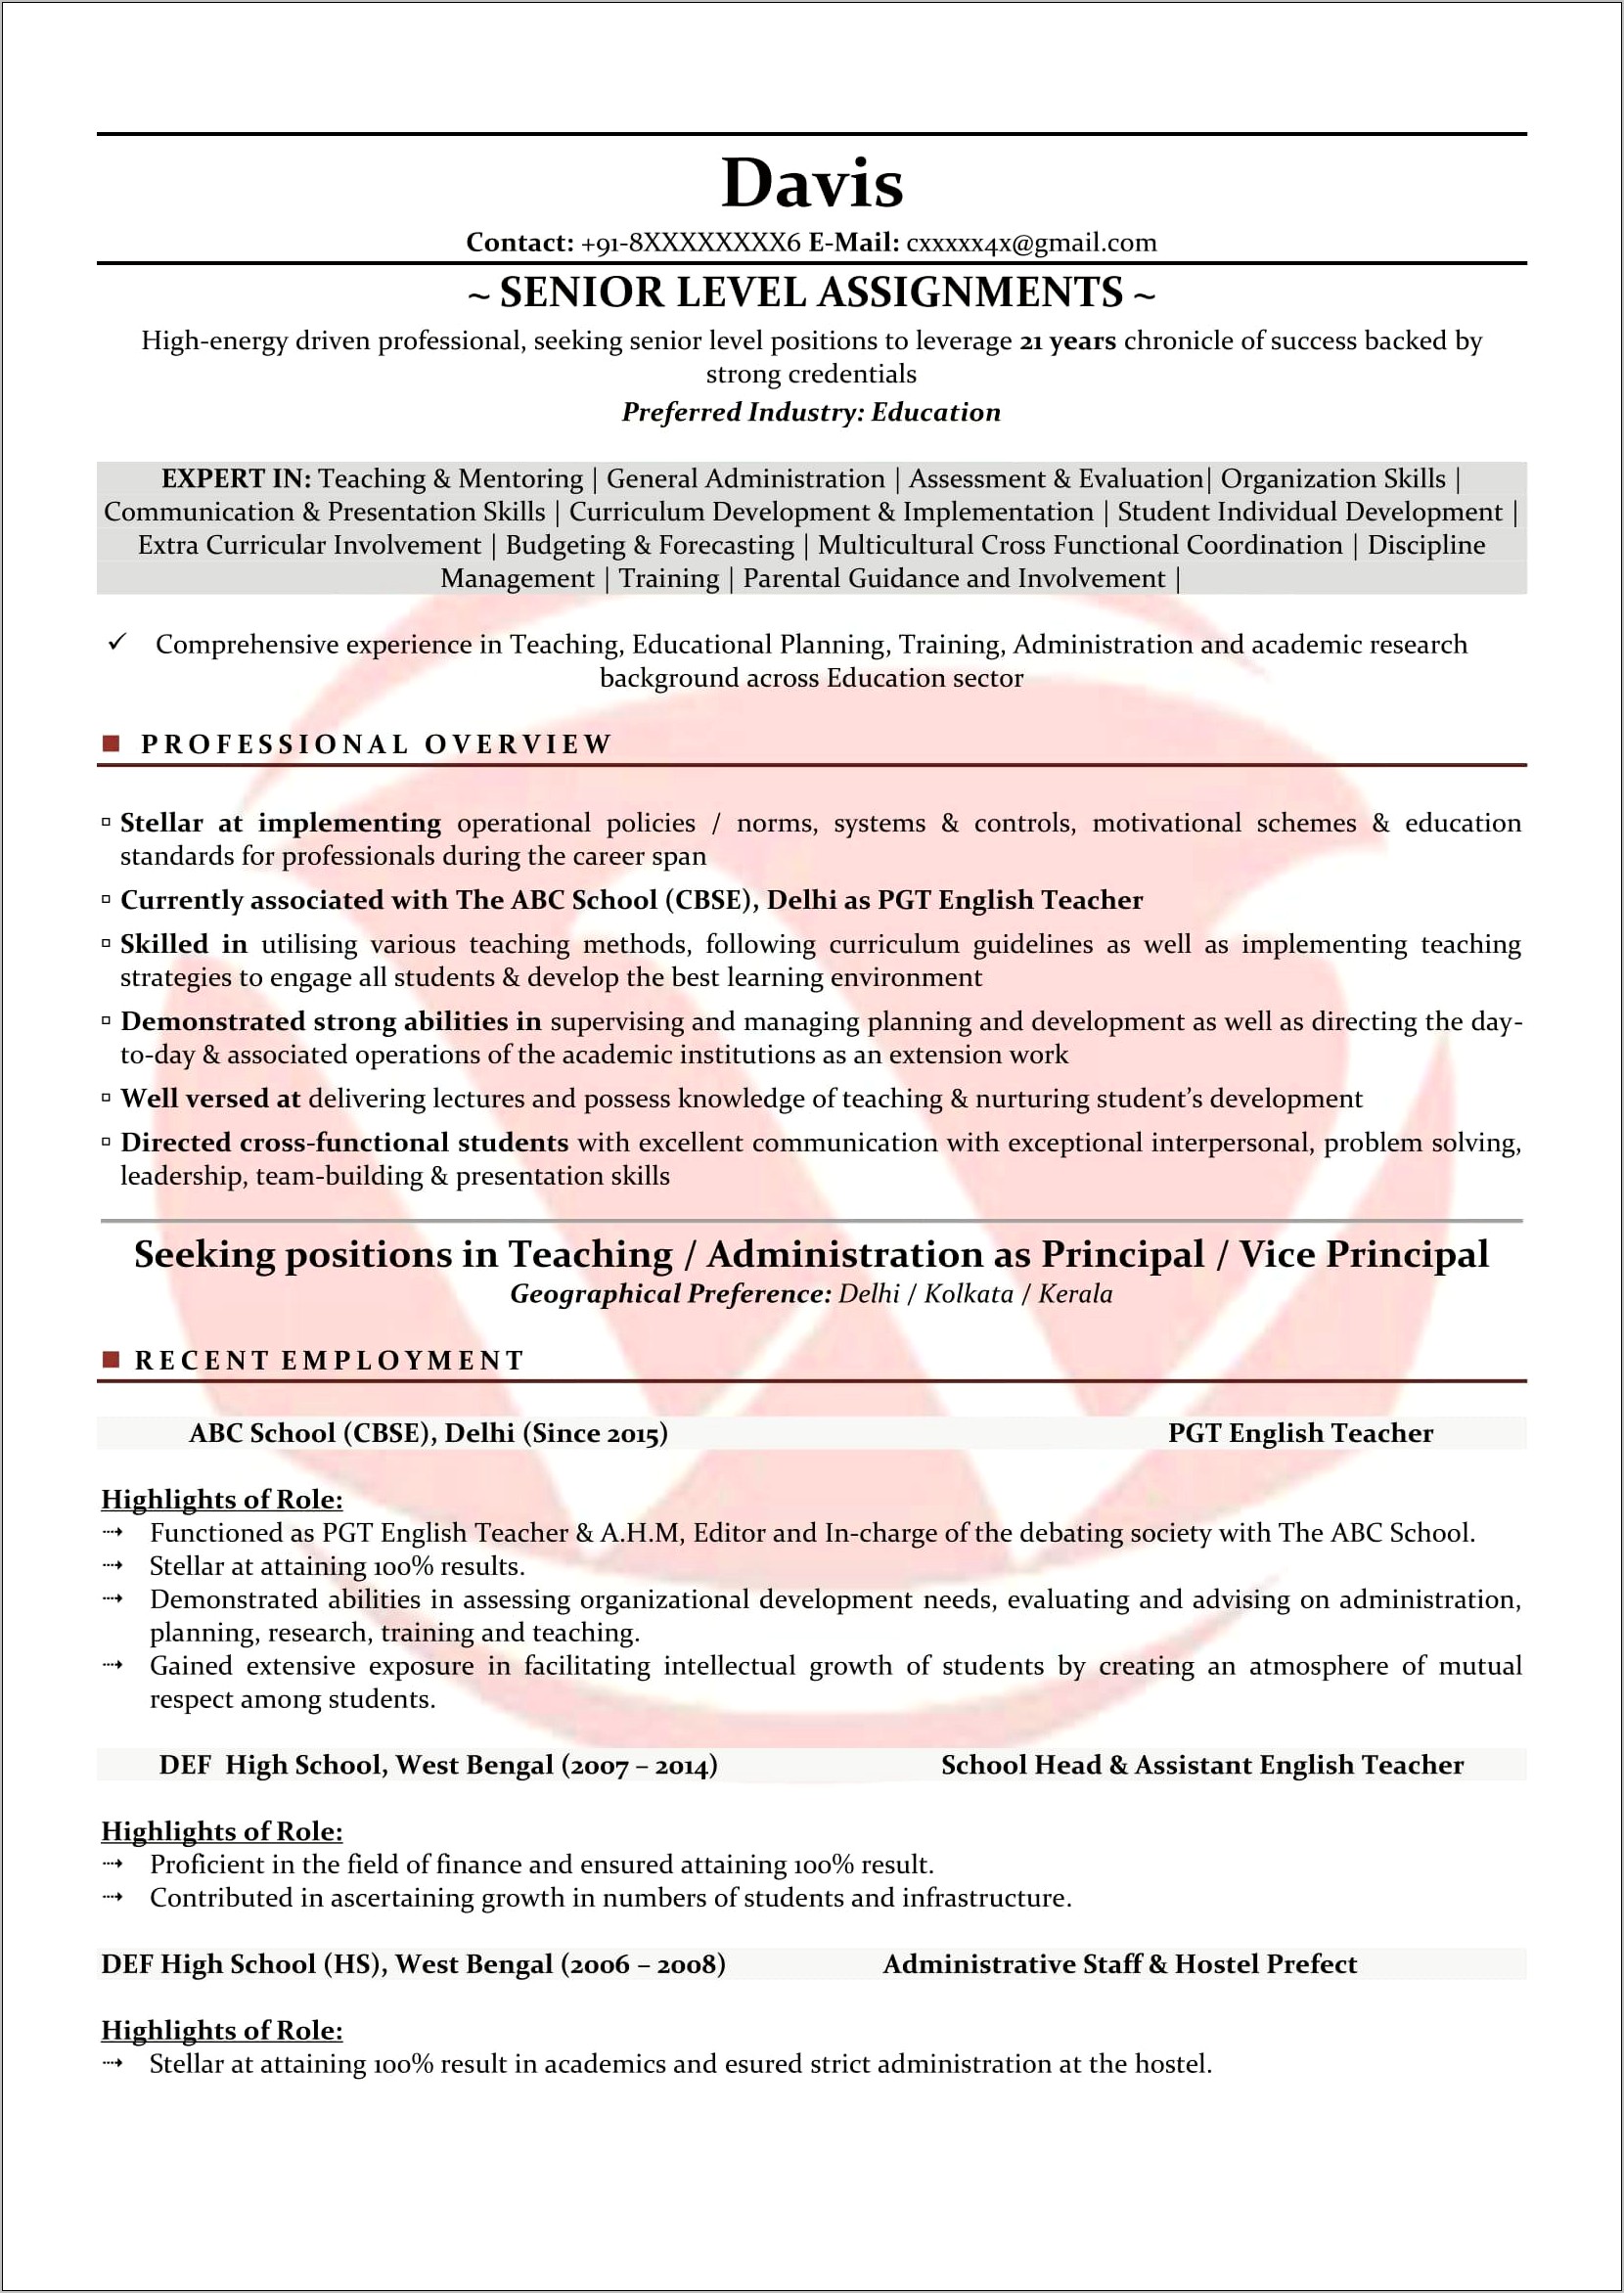 Sample Resume For Teaching Job Application